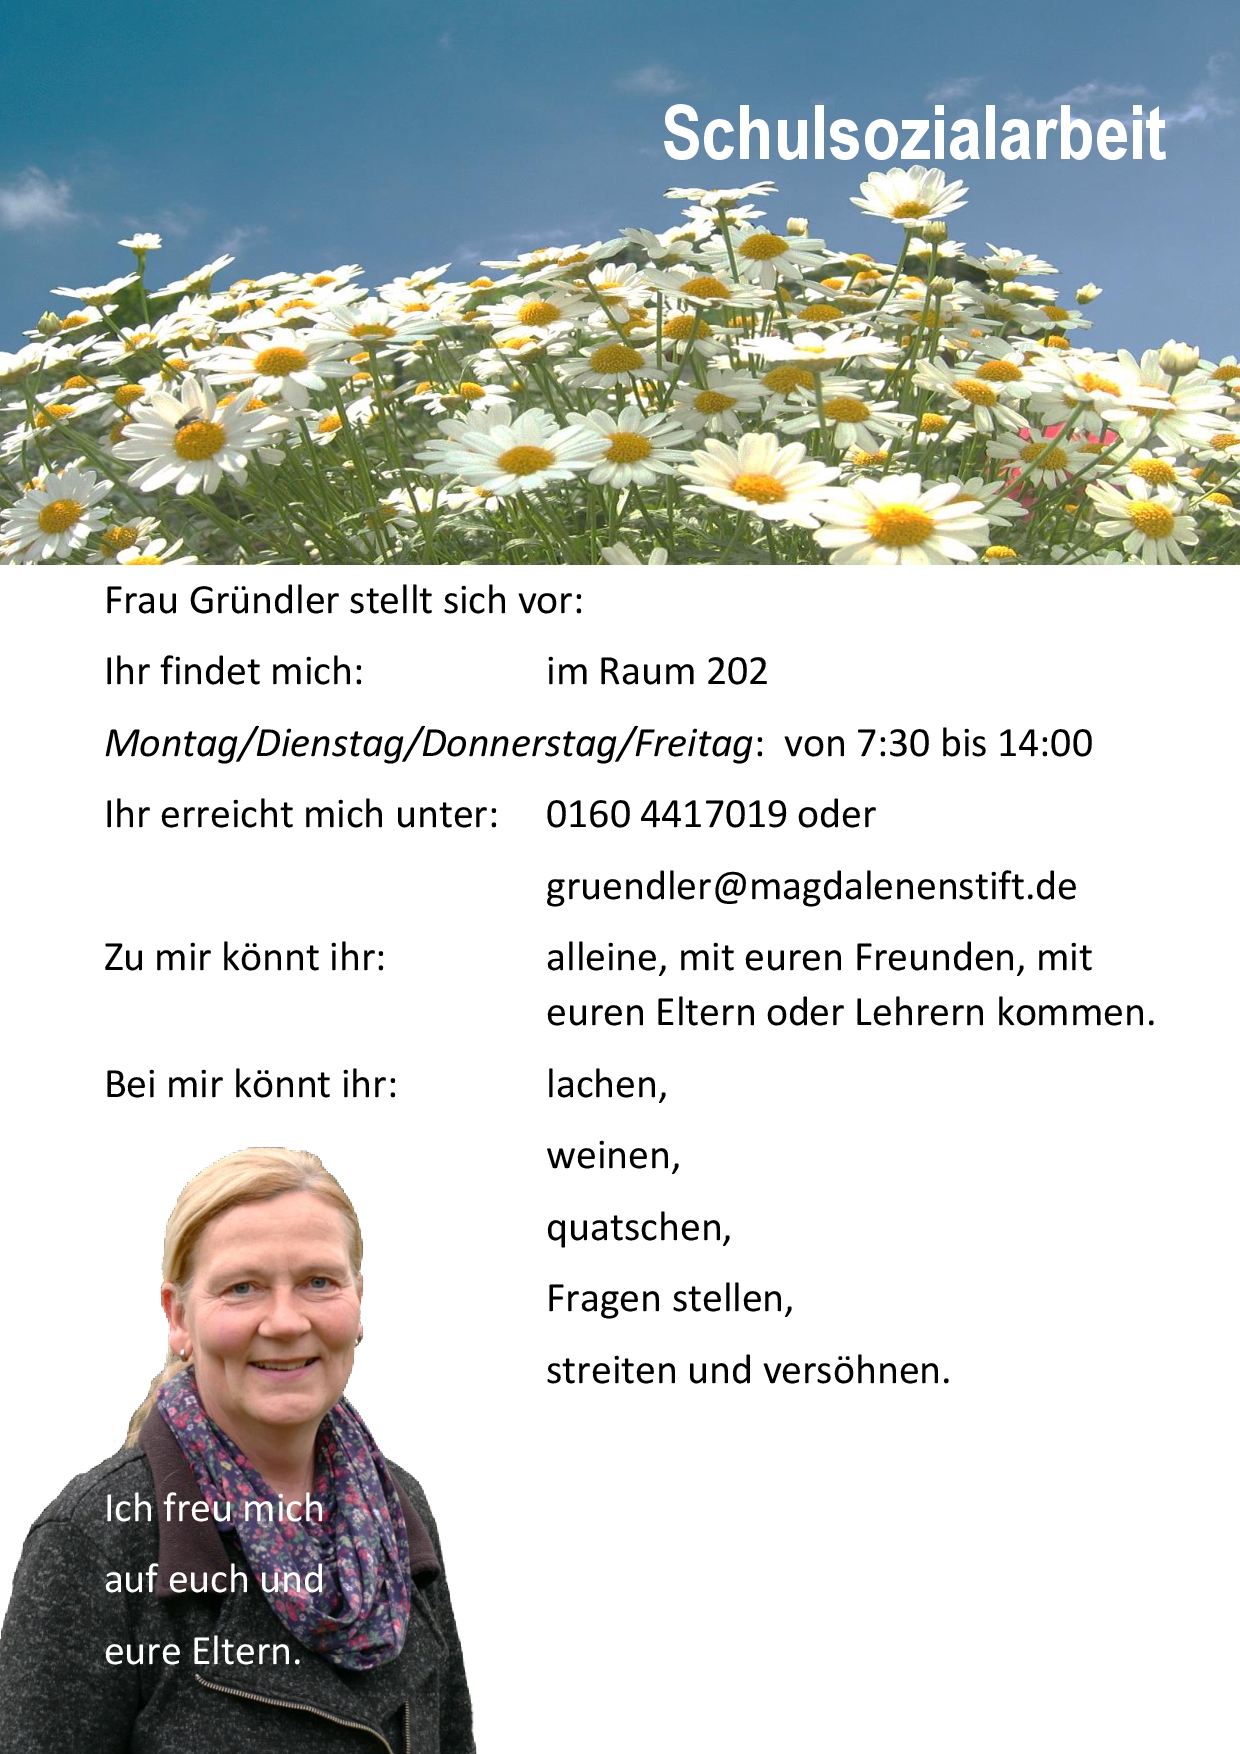 Frau Gründler